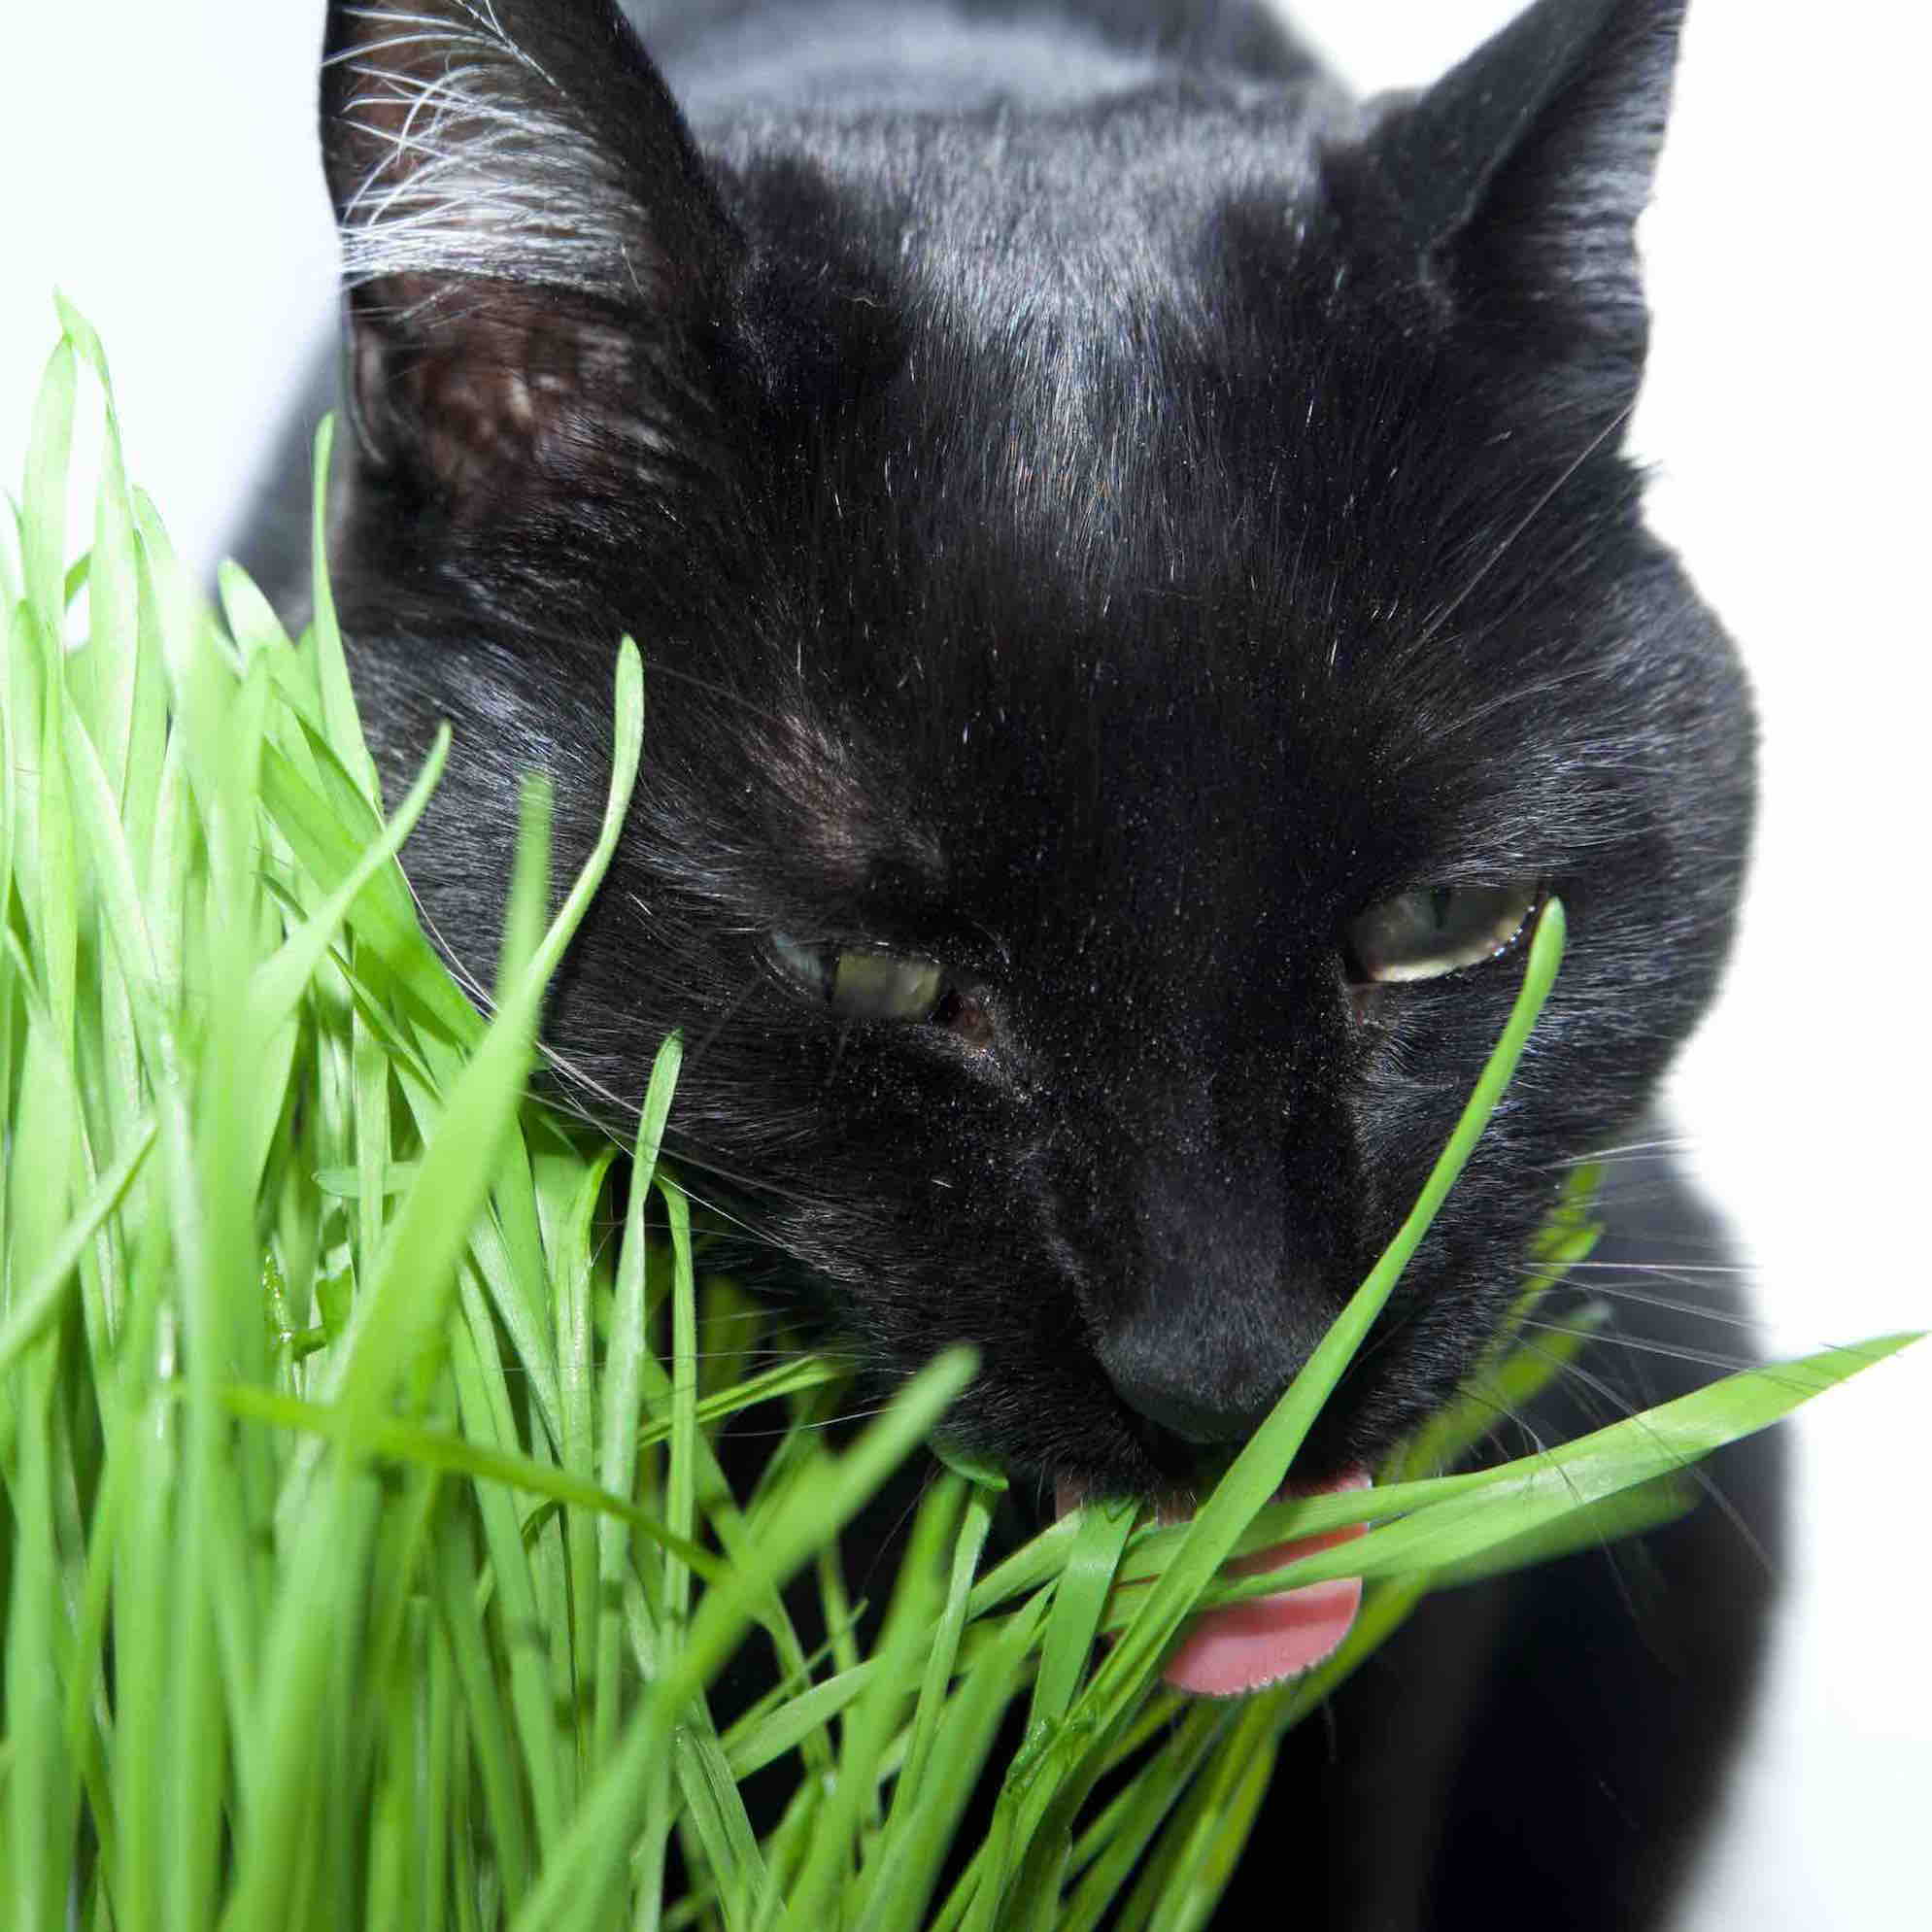 Black cat eating grass grown in a cat grass kit.